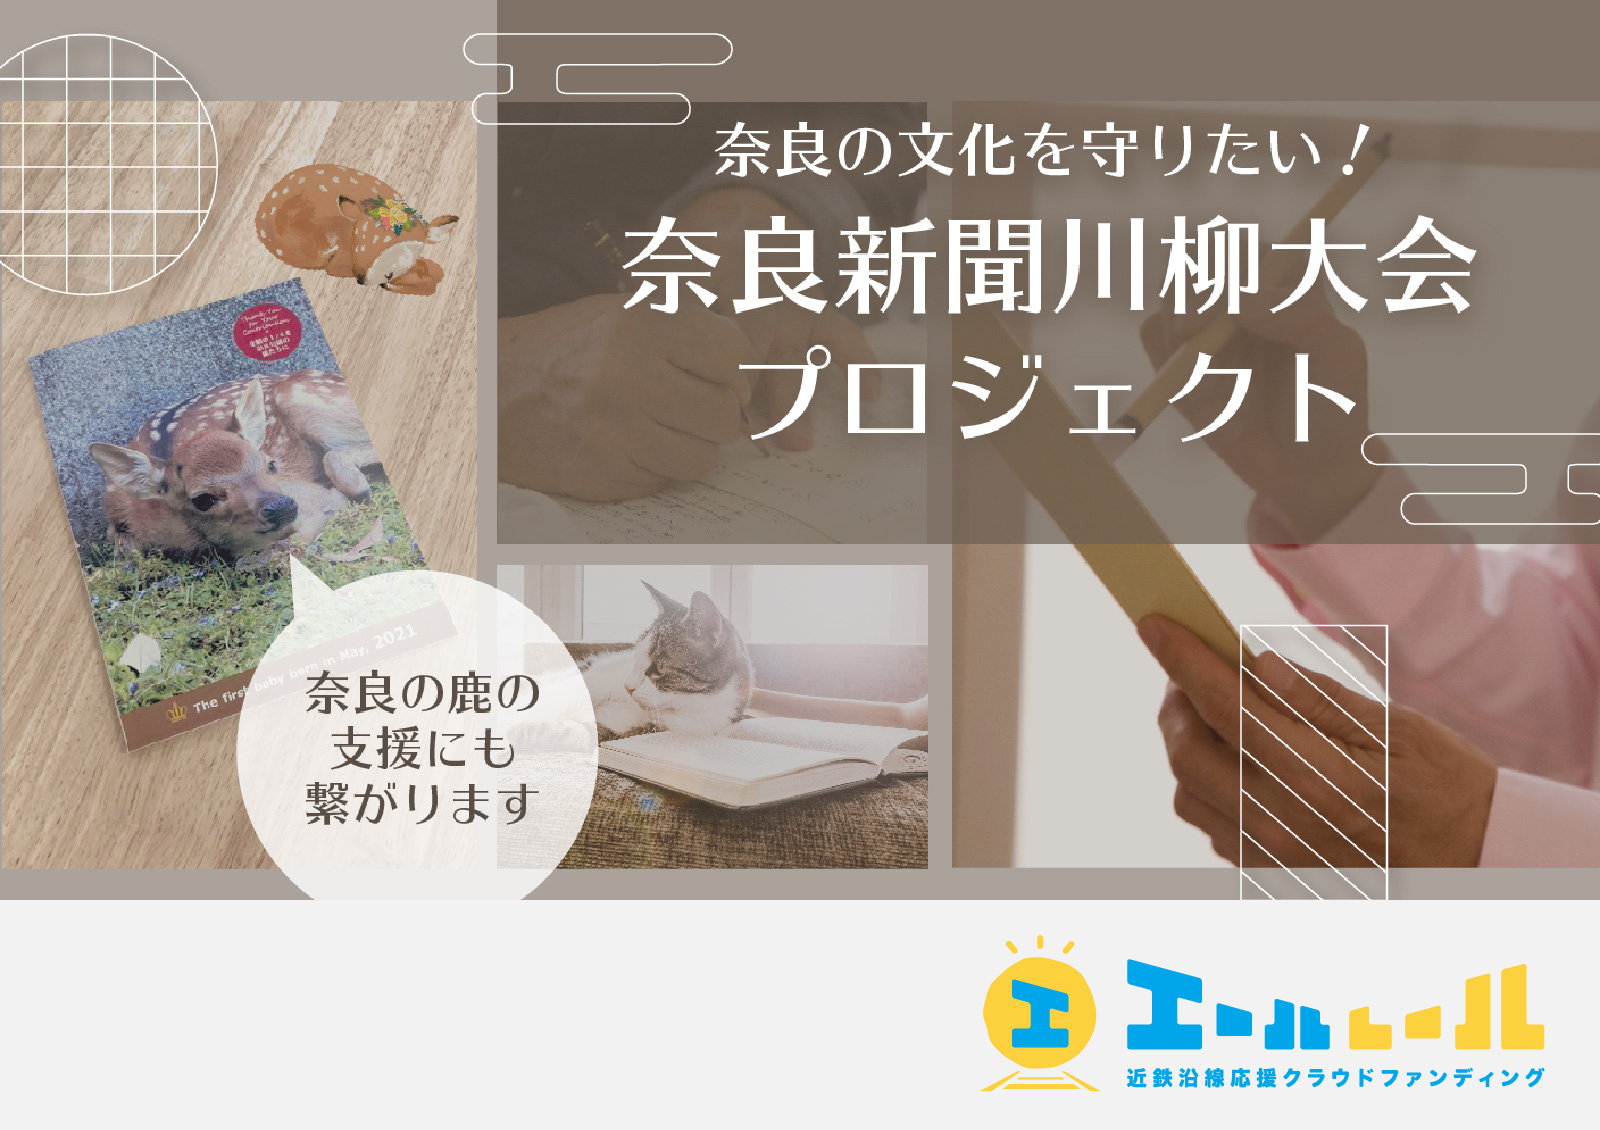 奈良の文化を守りたい！奈良新聞川柳大会プロジェクト - 01